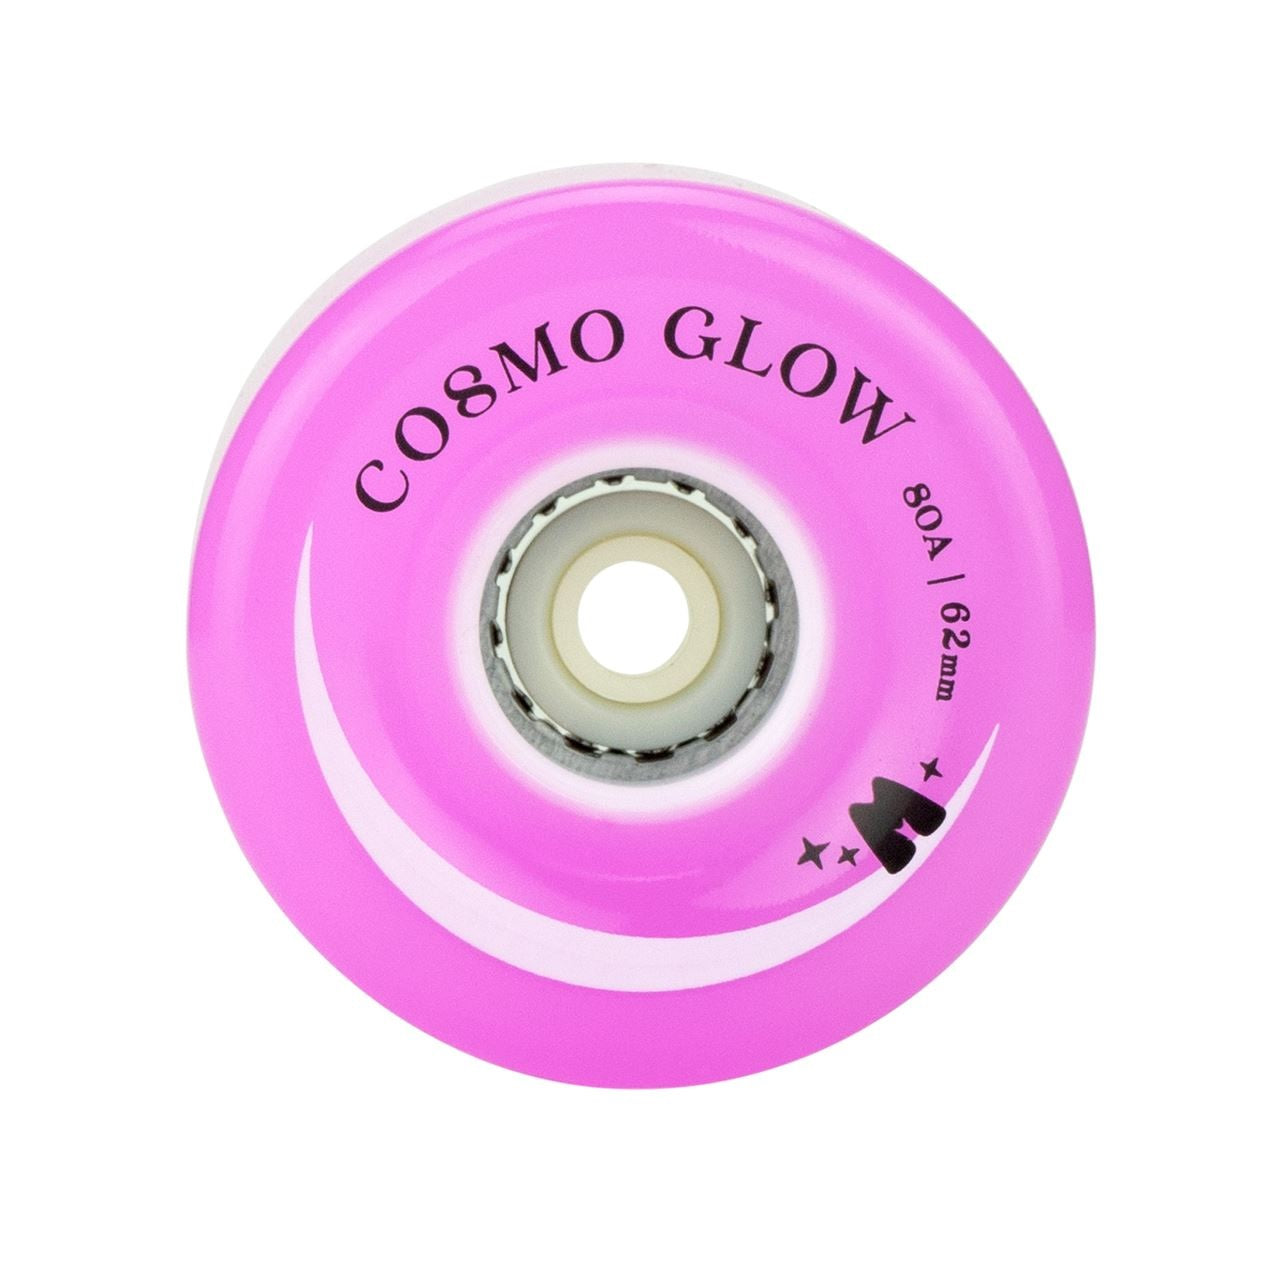 Moxi Cosmo Glow Roues de patins à roulettes lumineuses à LED Purple Haze 62 mm 80a - Paquet de 4